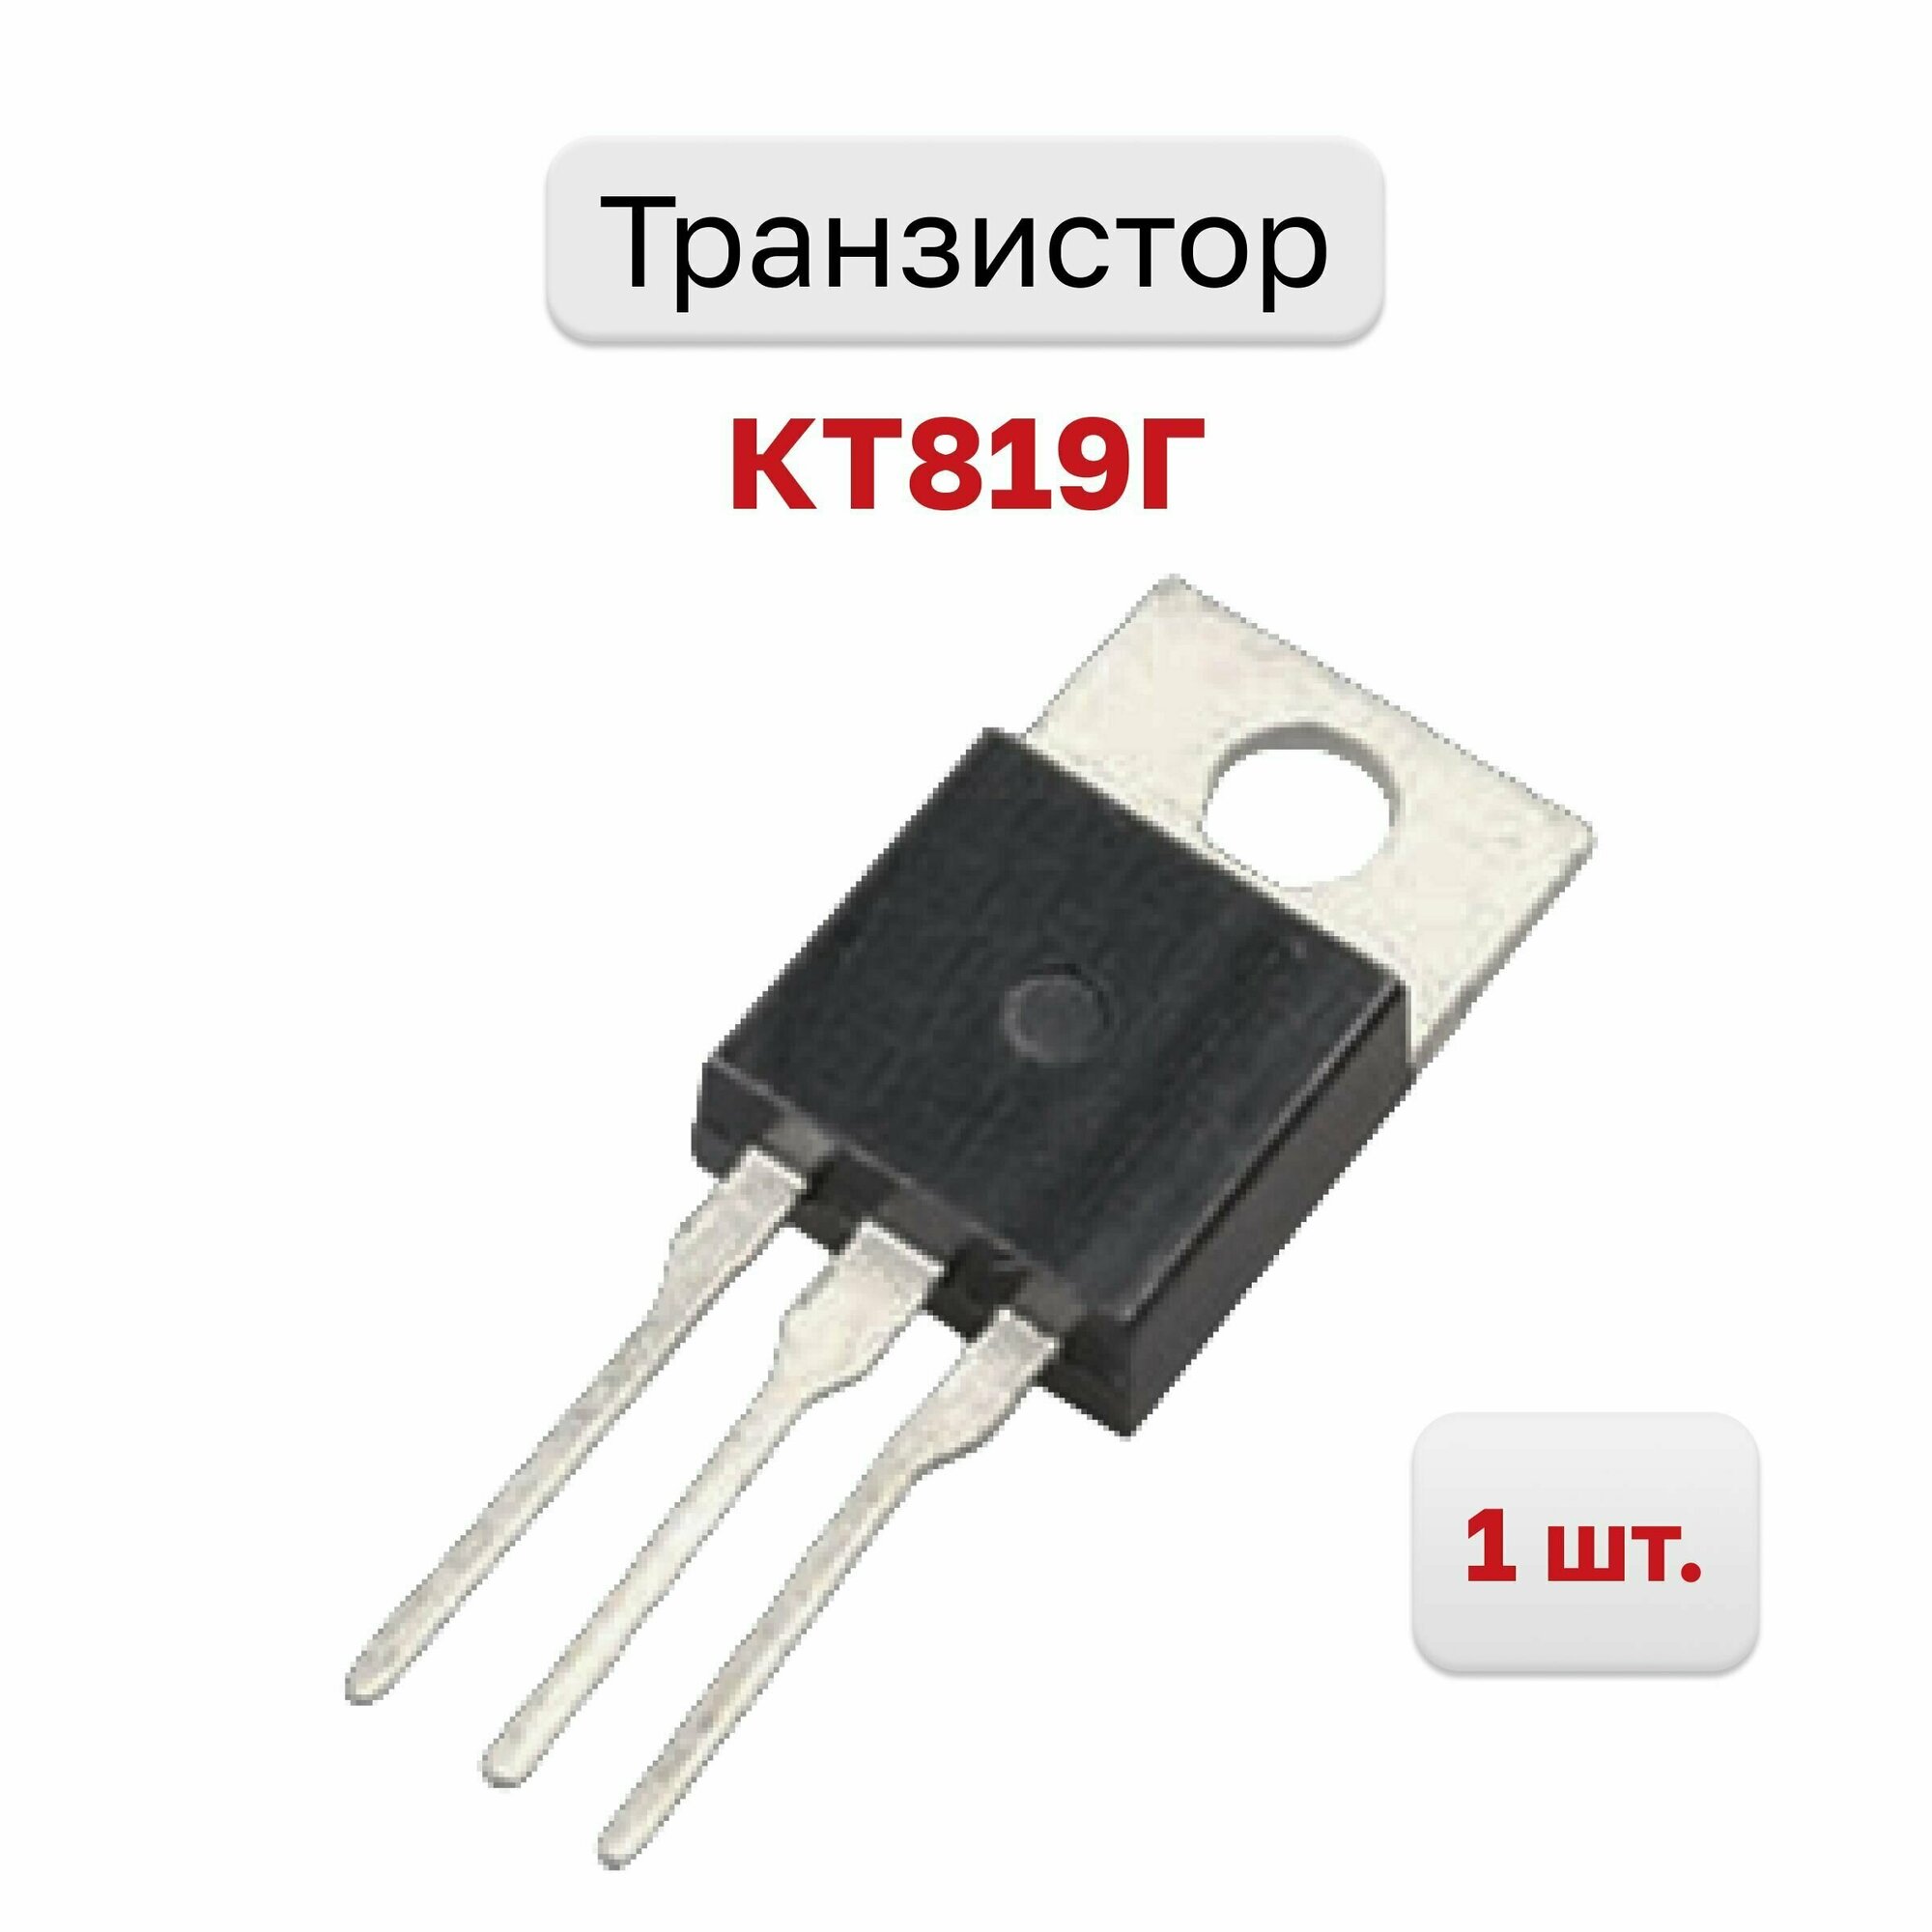 Транзистор КТ819Г, 1 шт.